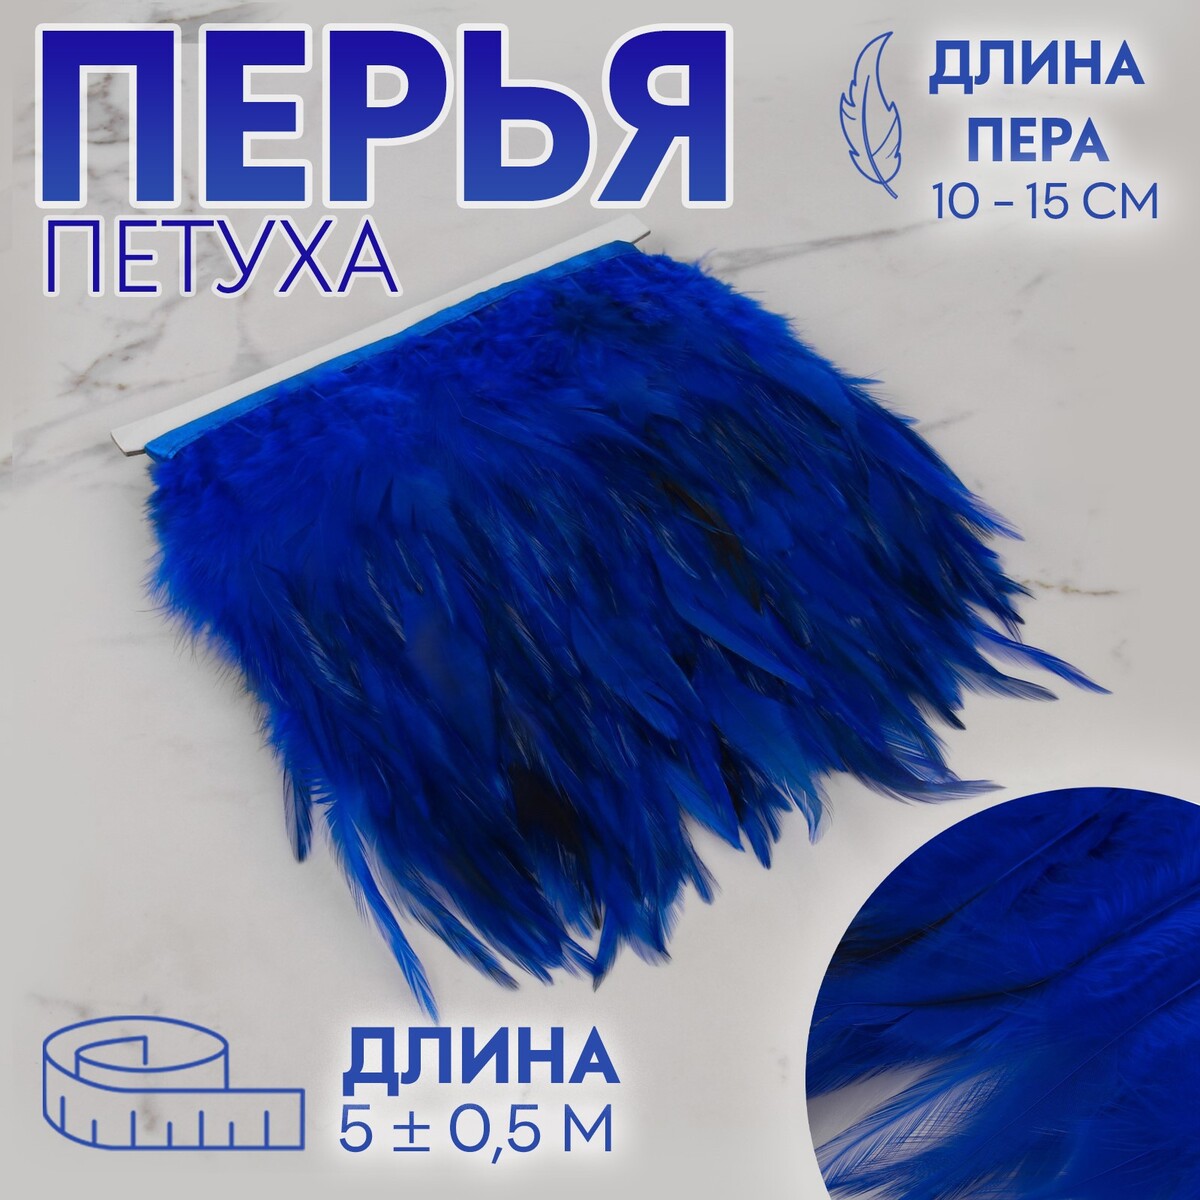 Тесьма с перьями петуха, 10-15 см, 5 ± 0,5 м, цвет синий тесьма с перьями индюка 13 17 см 5 ± 0 5 м пудровый